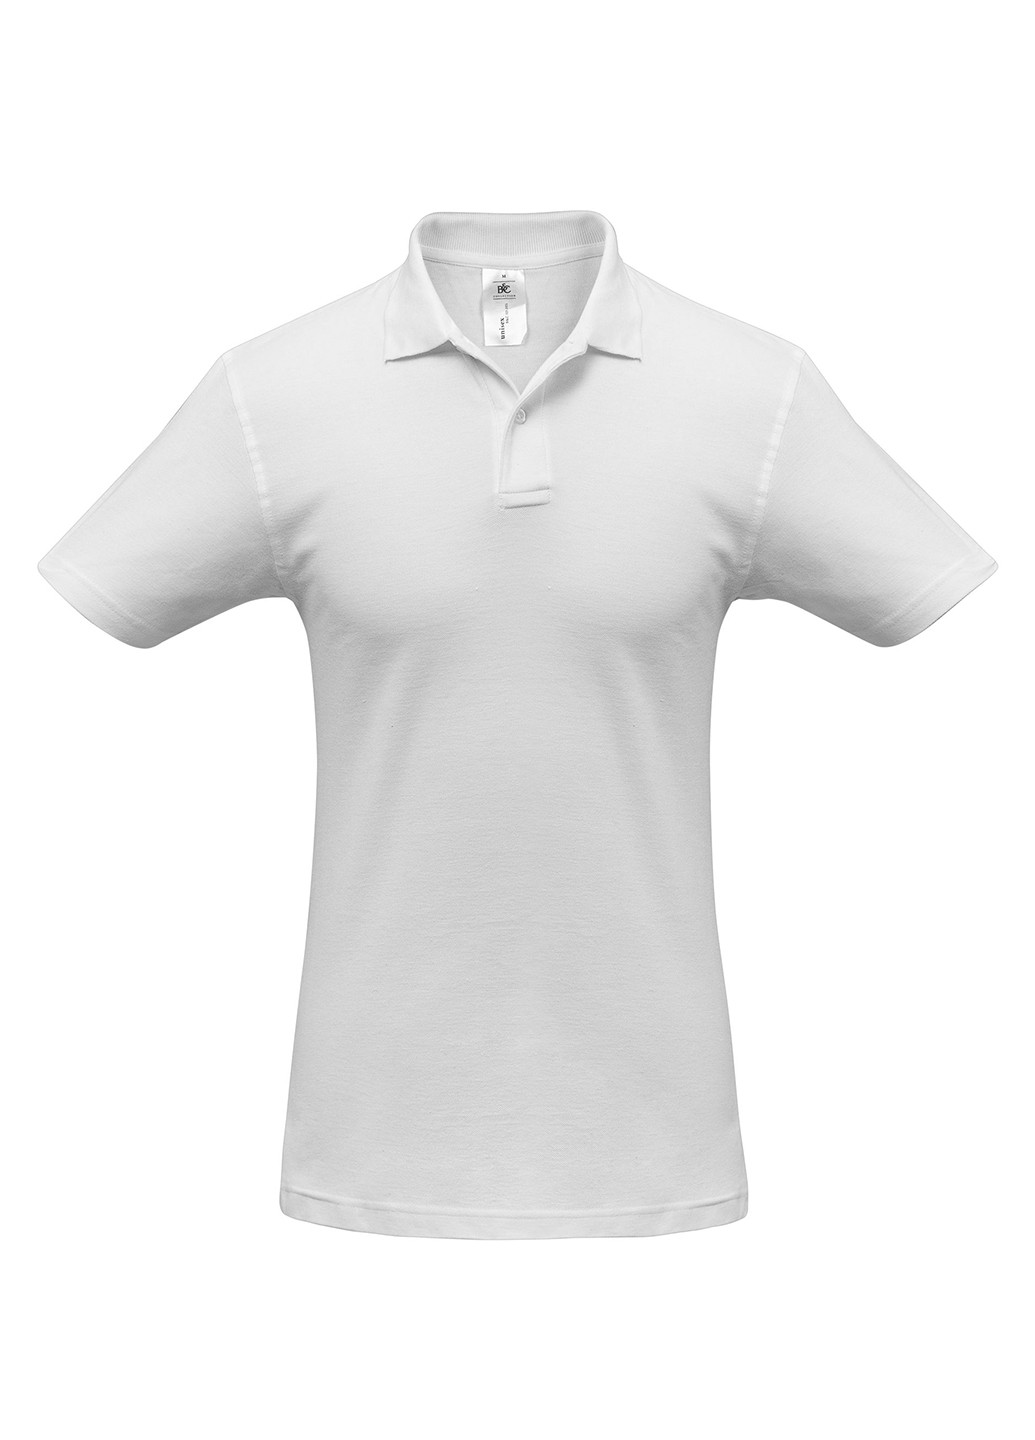 Белая футболка-поло для мужчин B&C однотонная